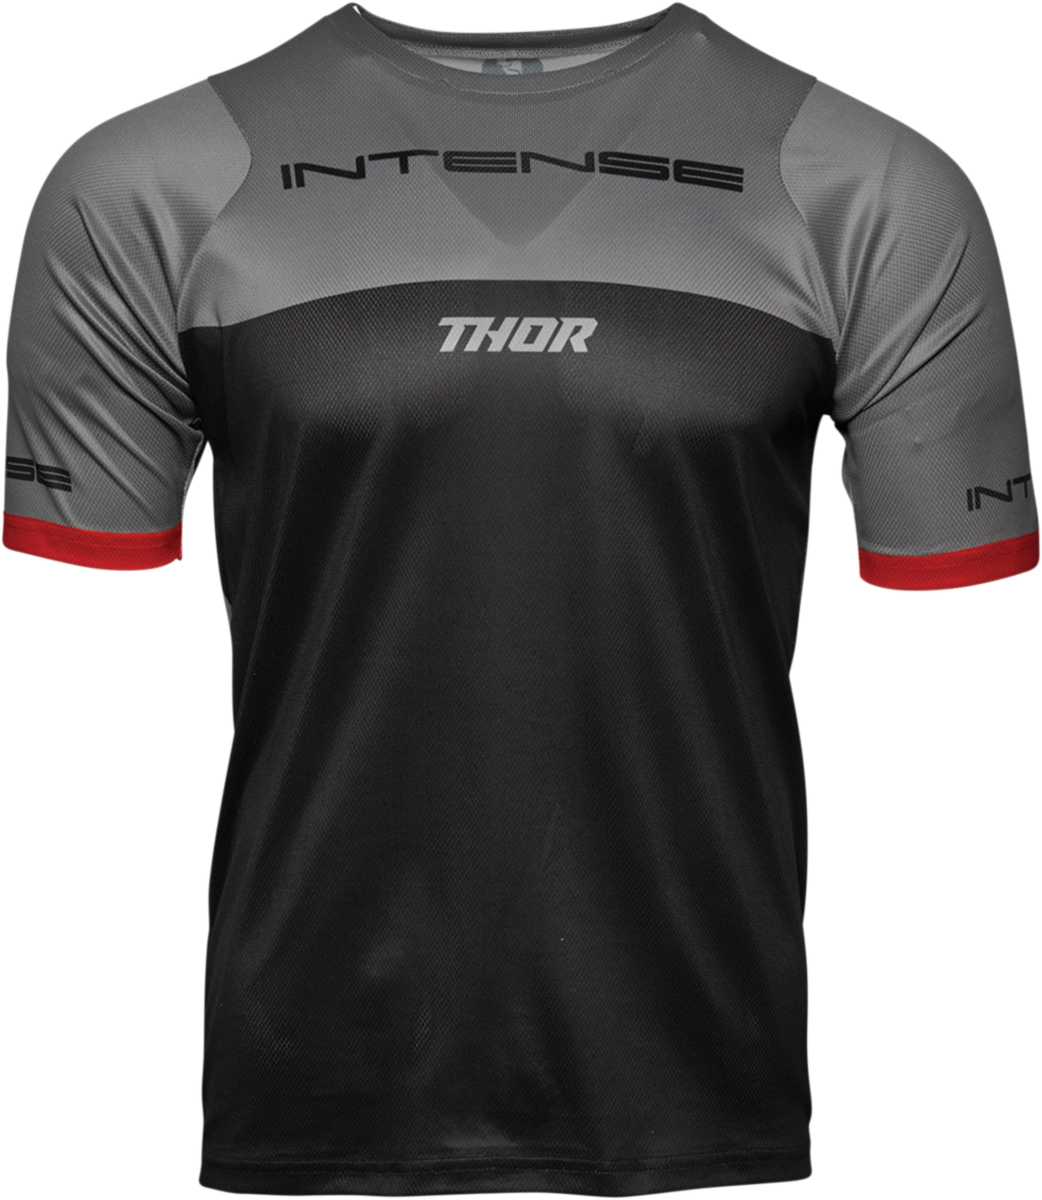 THOR Intense Team Jersey - Short-Sleeve - Black/Gray - Medium 5120-0058